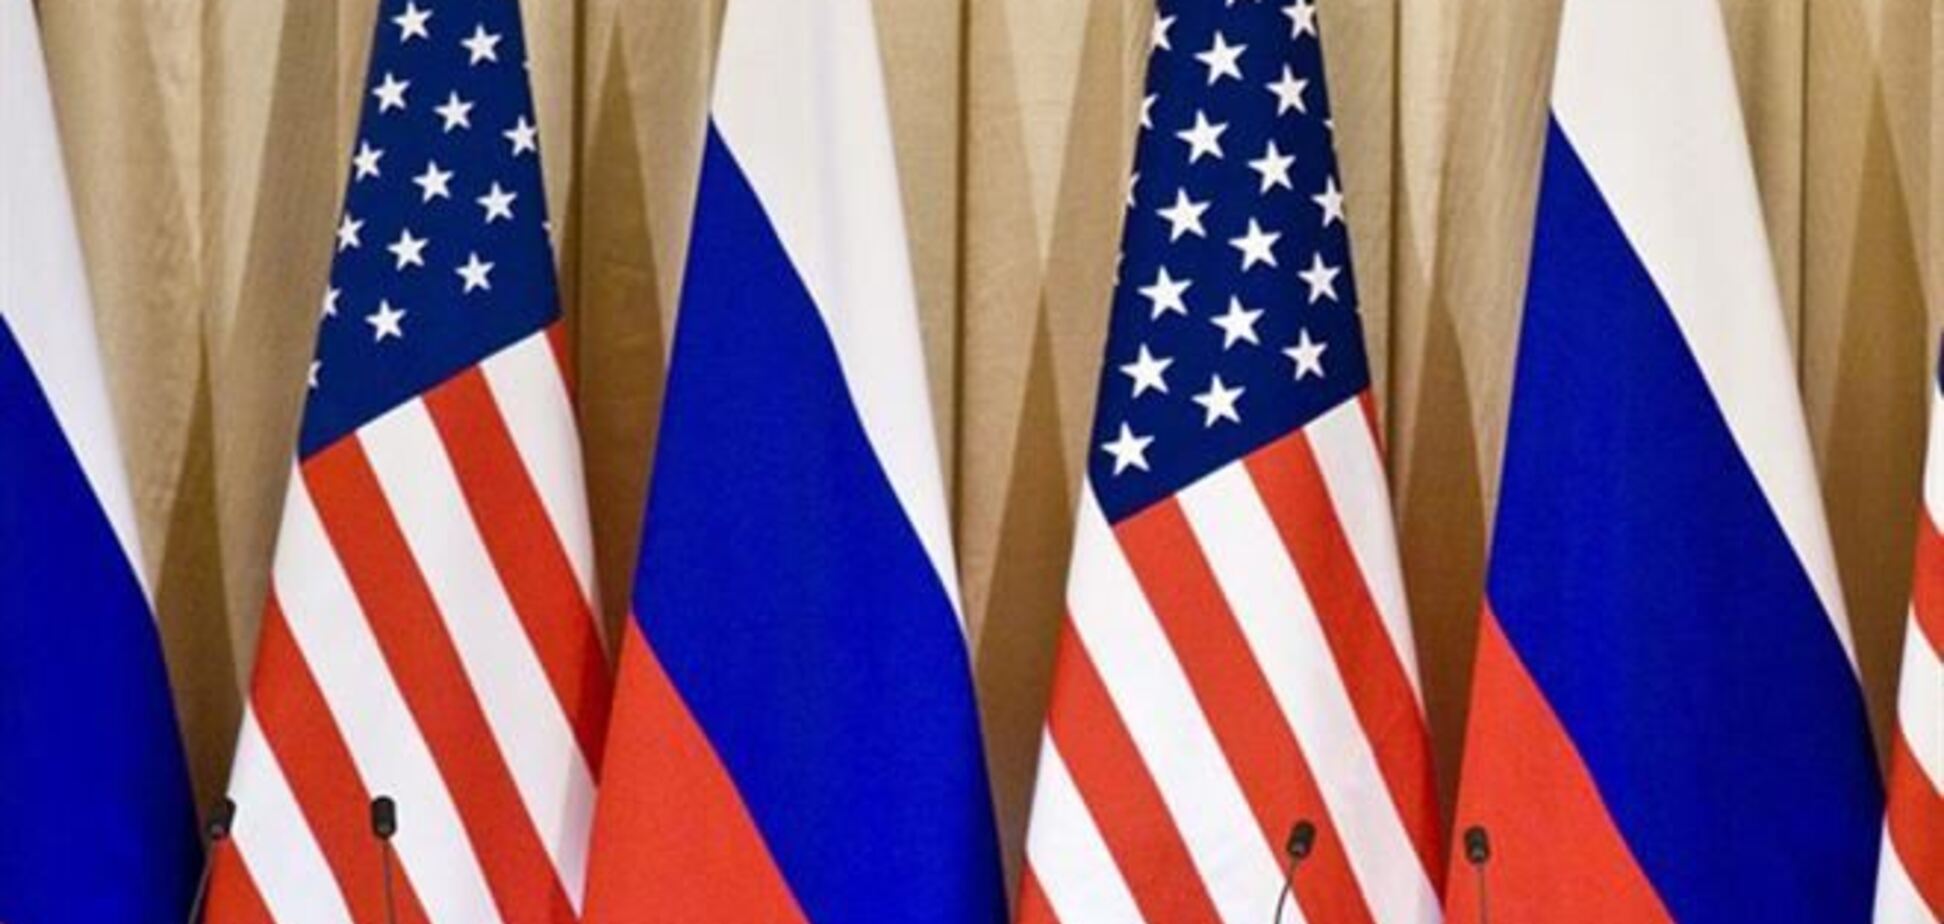 Вашингтон ввел новые торговые санкции против Москвы